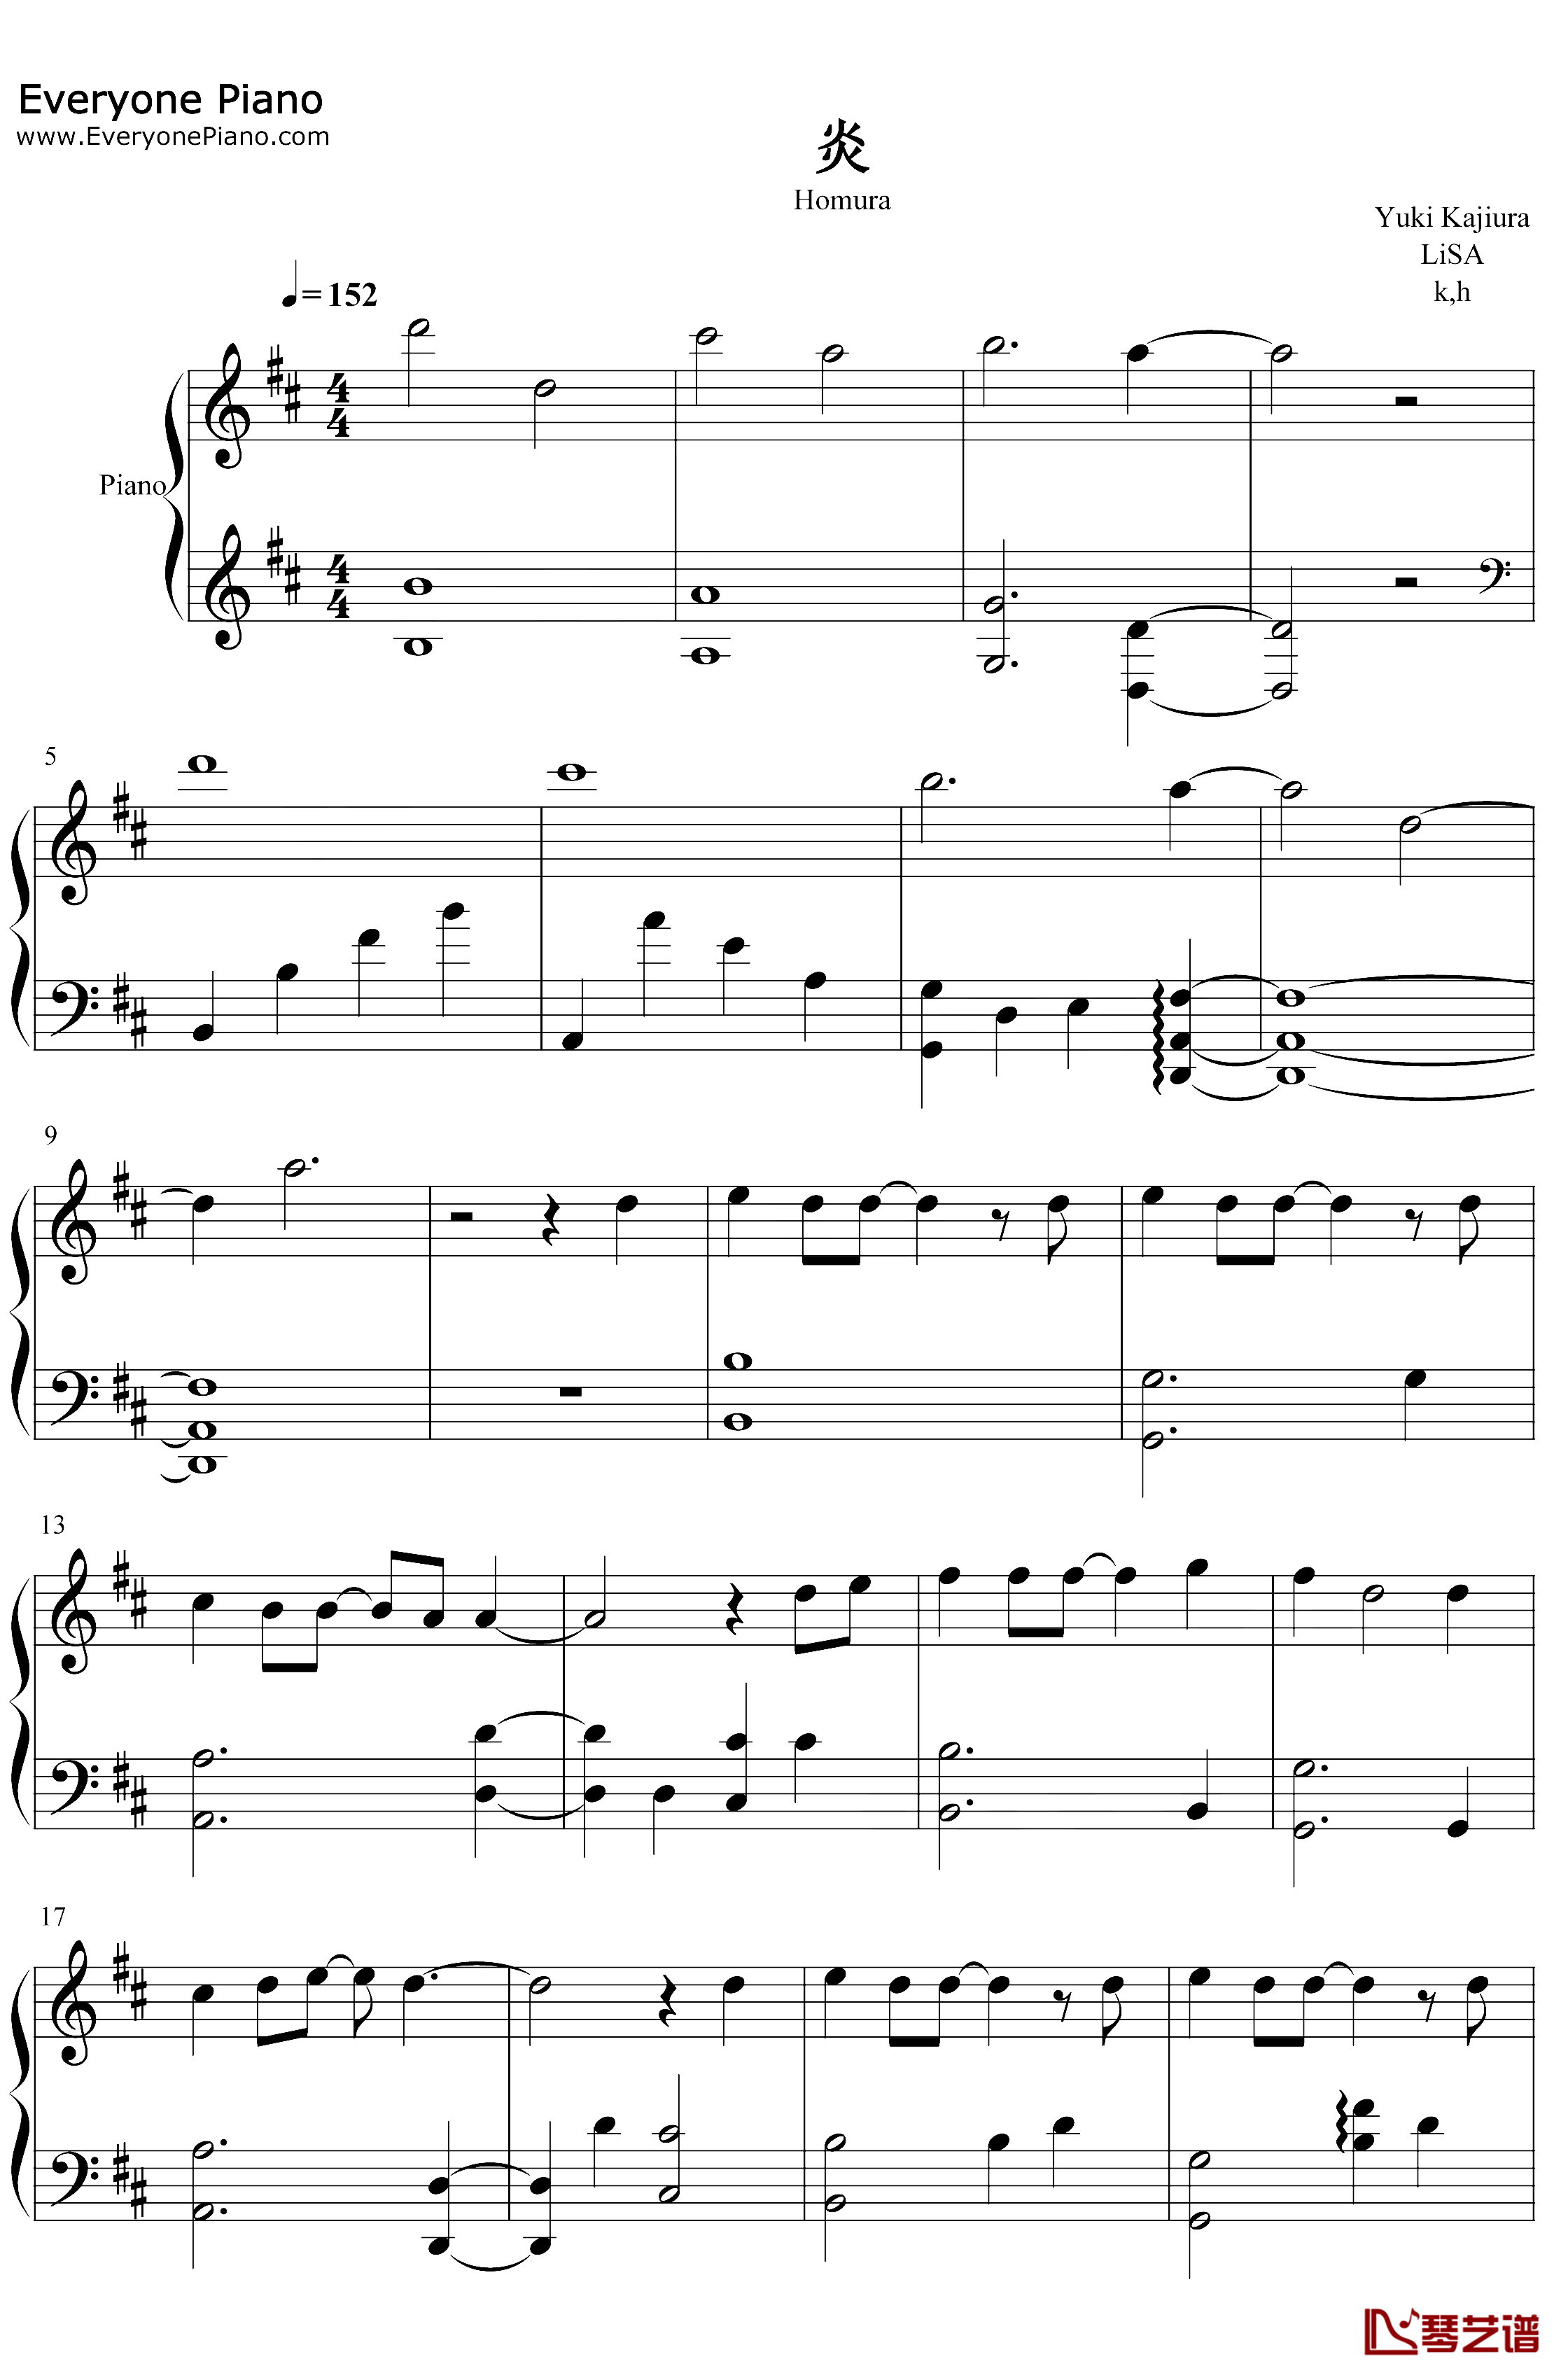 炎钢琴谱-LiSA-鬼灭之刃无限列车篇主题曲1